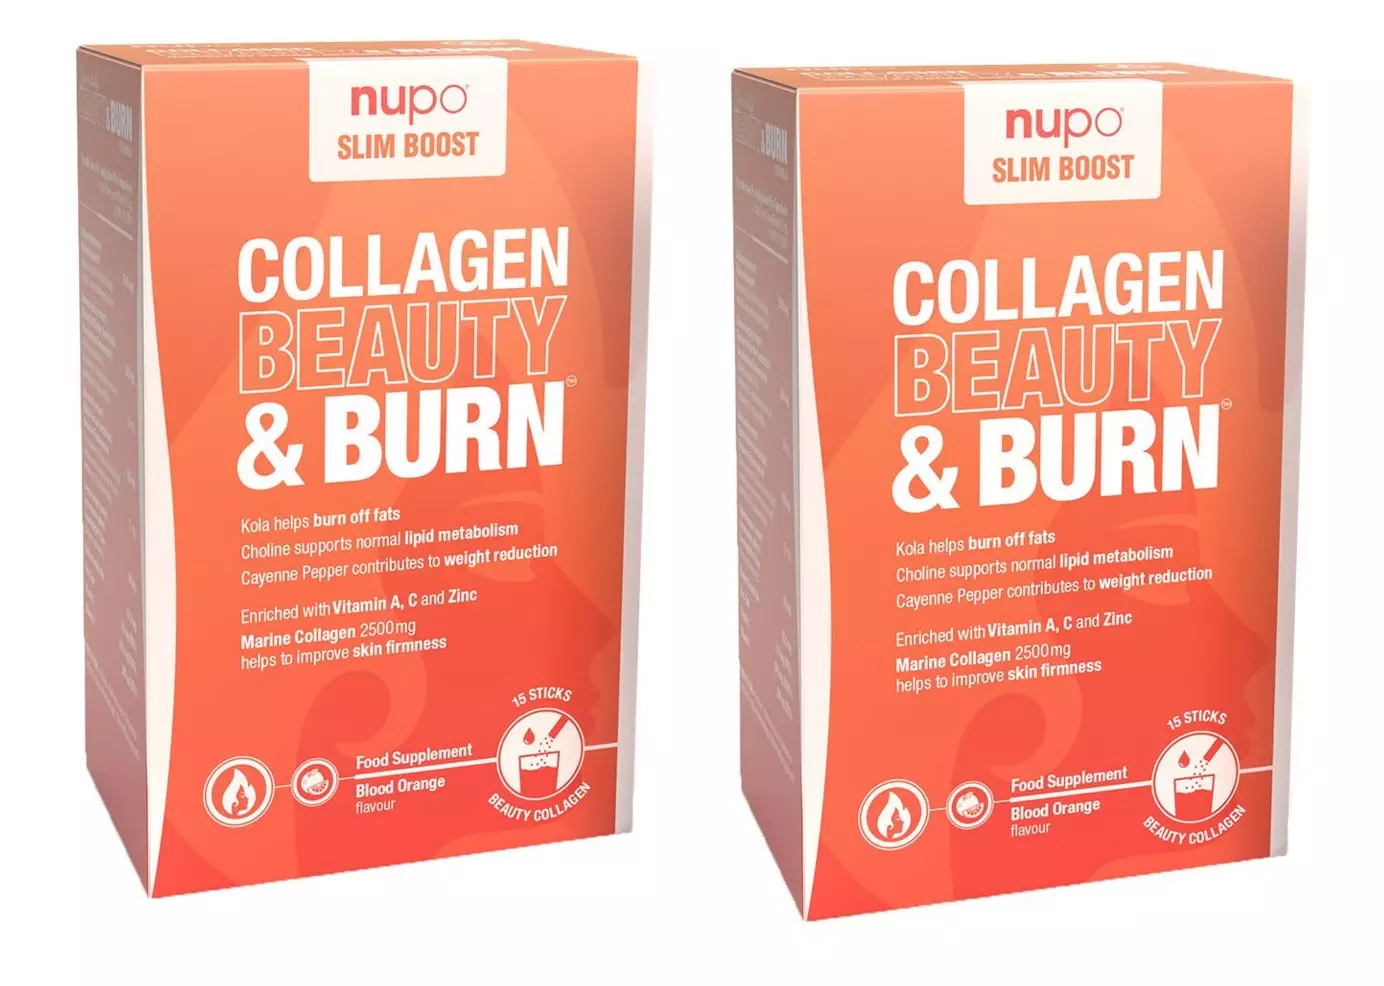 Nupo X Slim Boost Collagen Beautyburn,